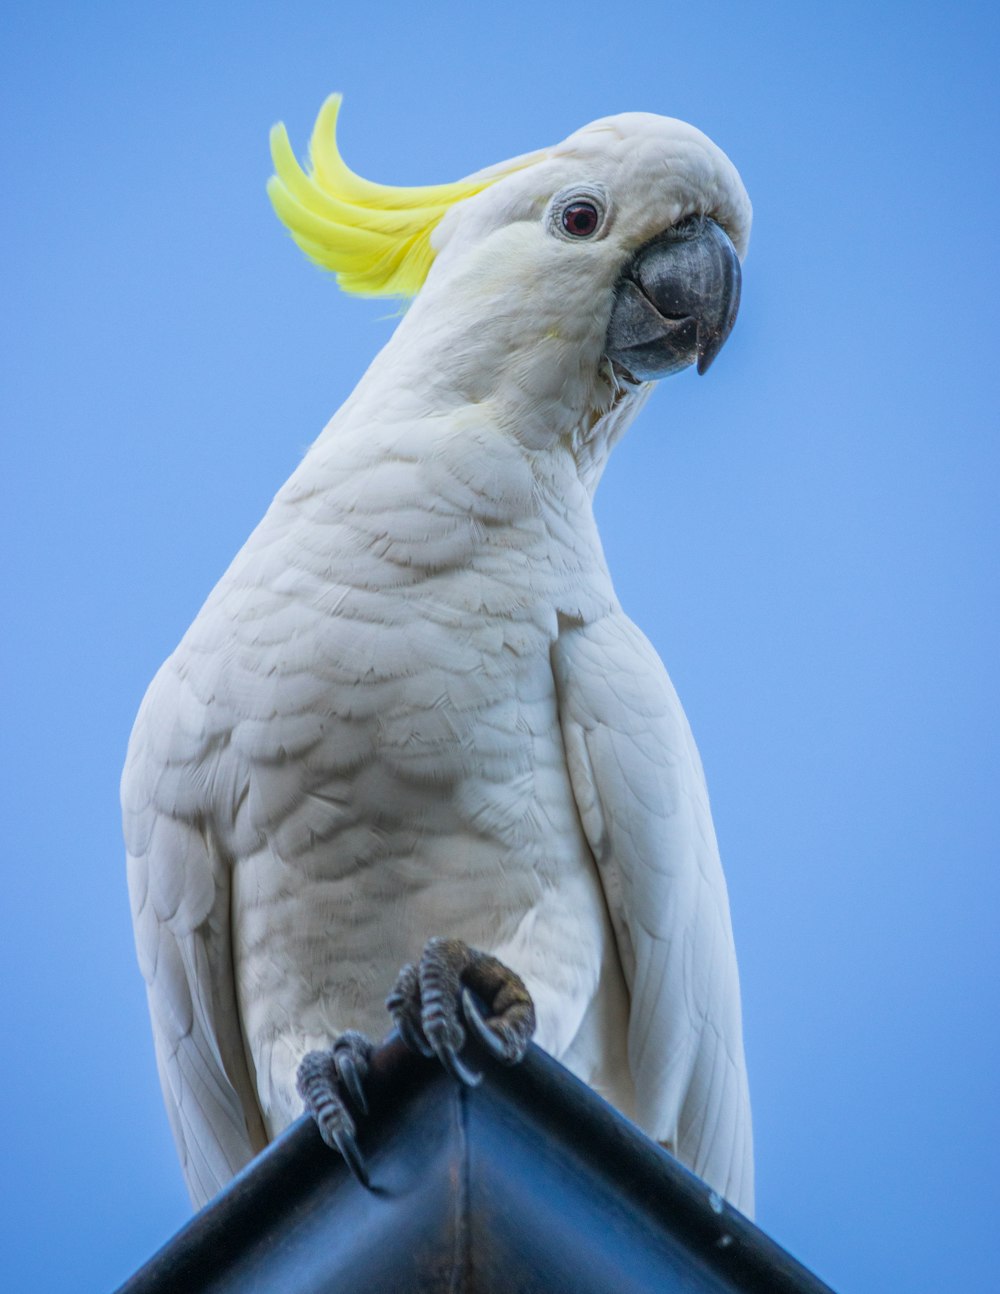 un uccello bianco con una buccia gialla sulla testa